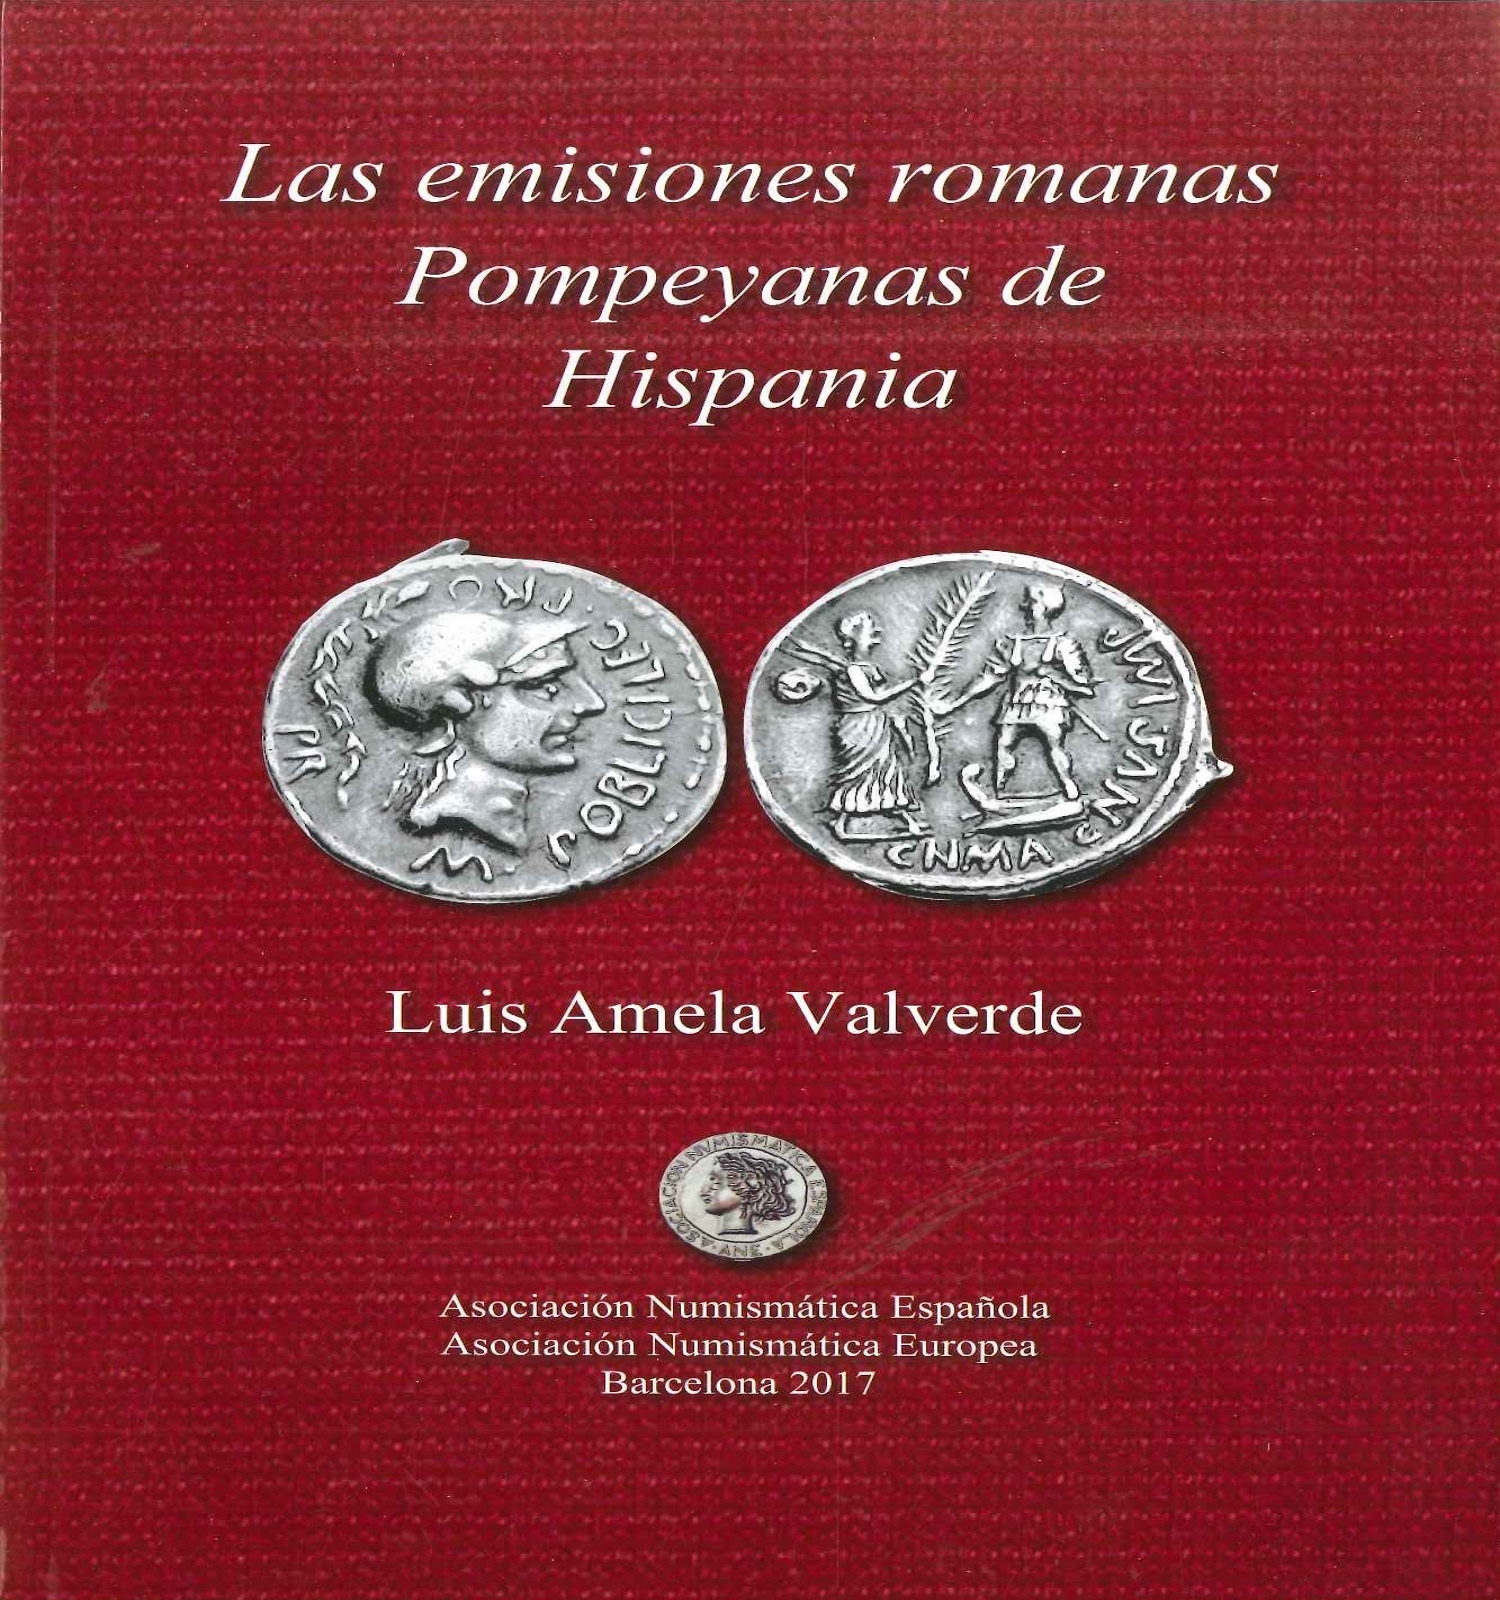 Las emisiones romanas pompeyanas de Hispania